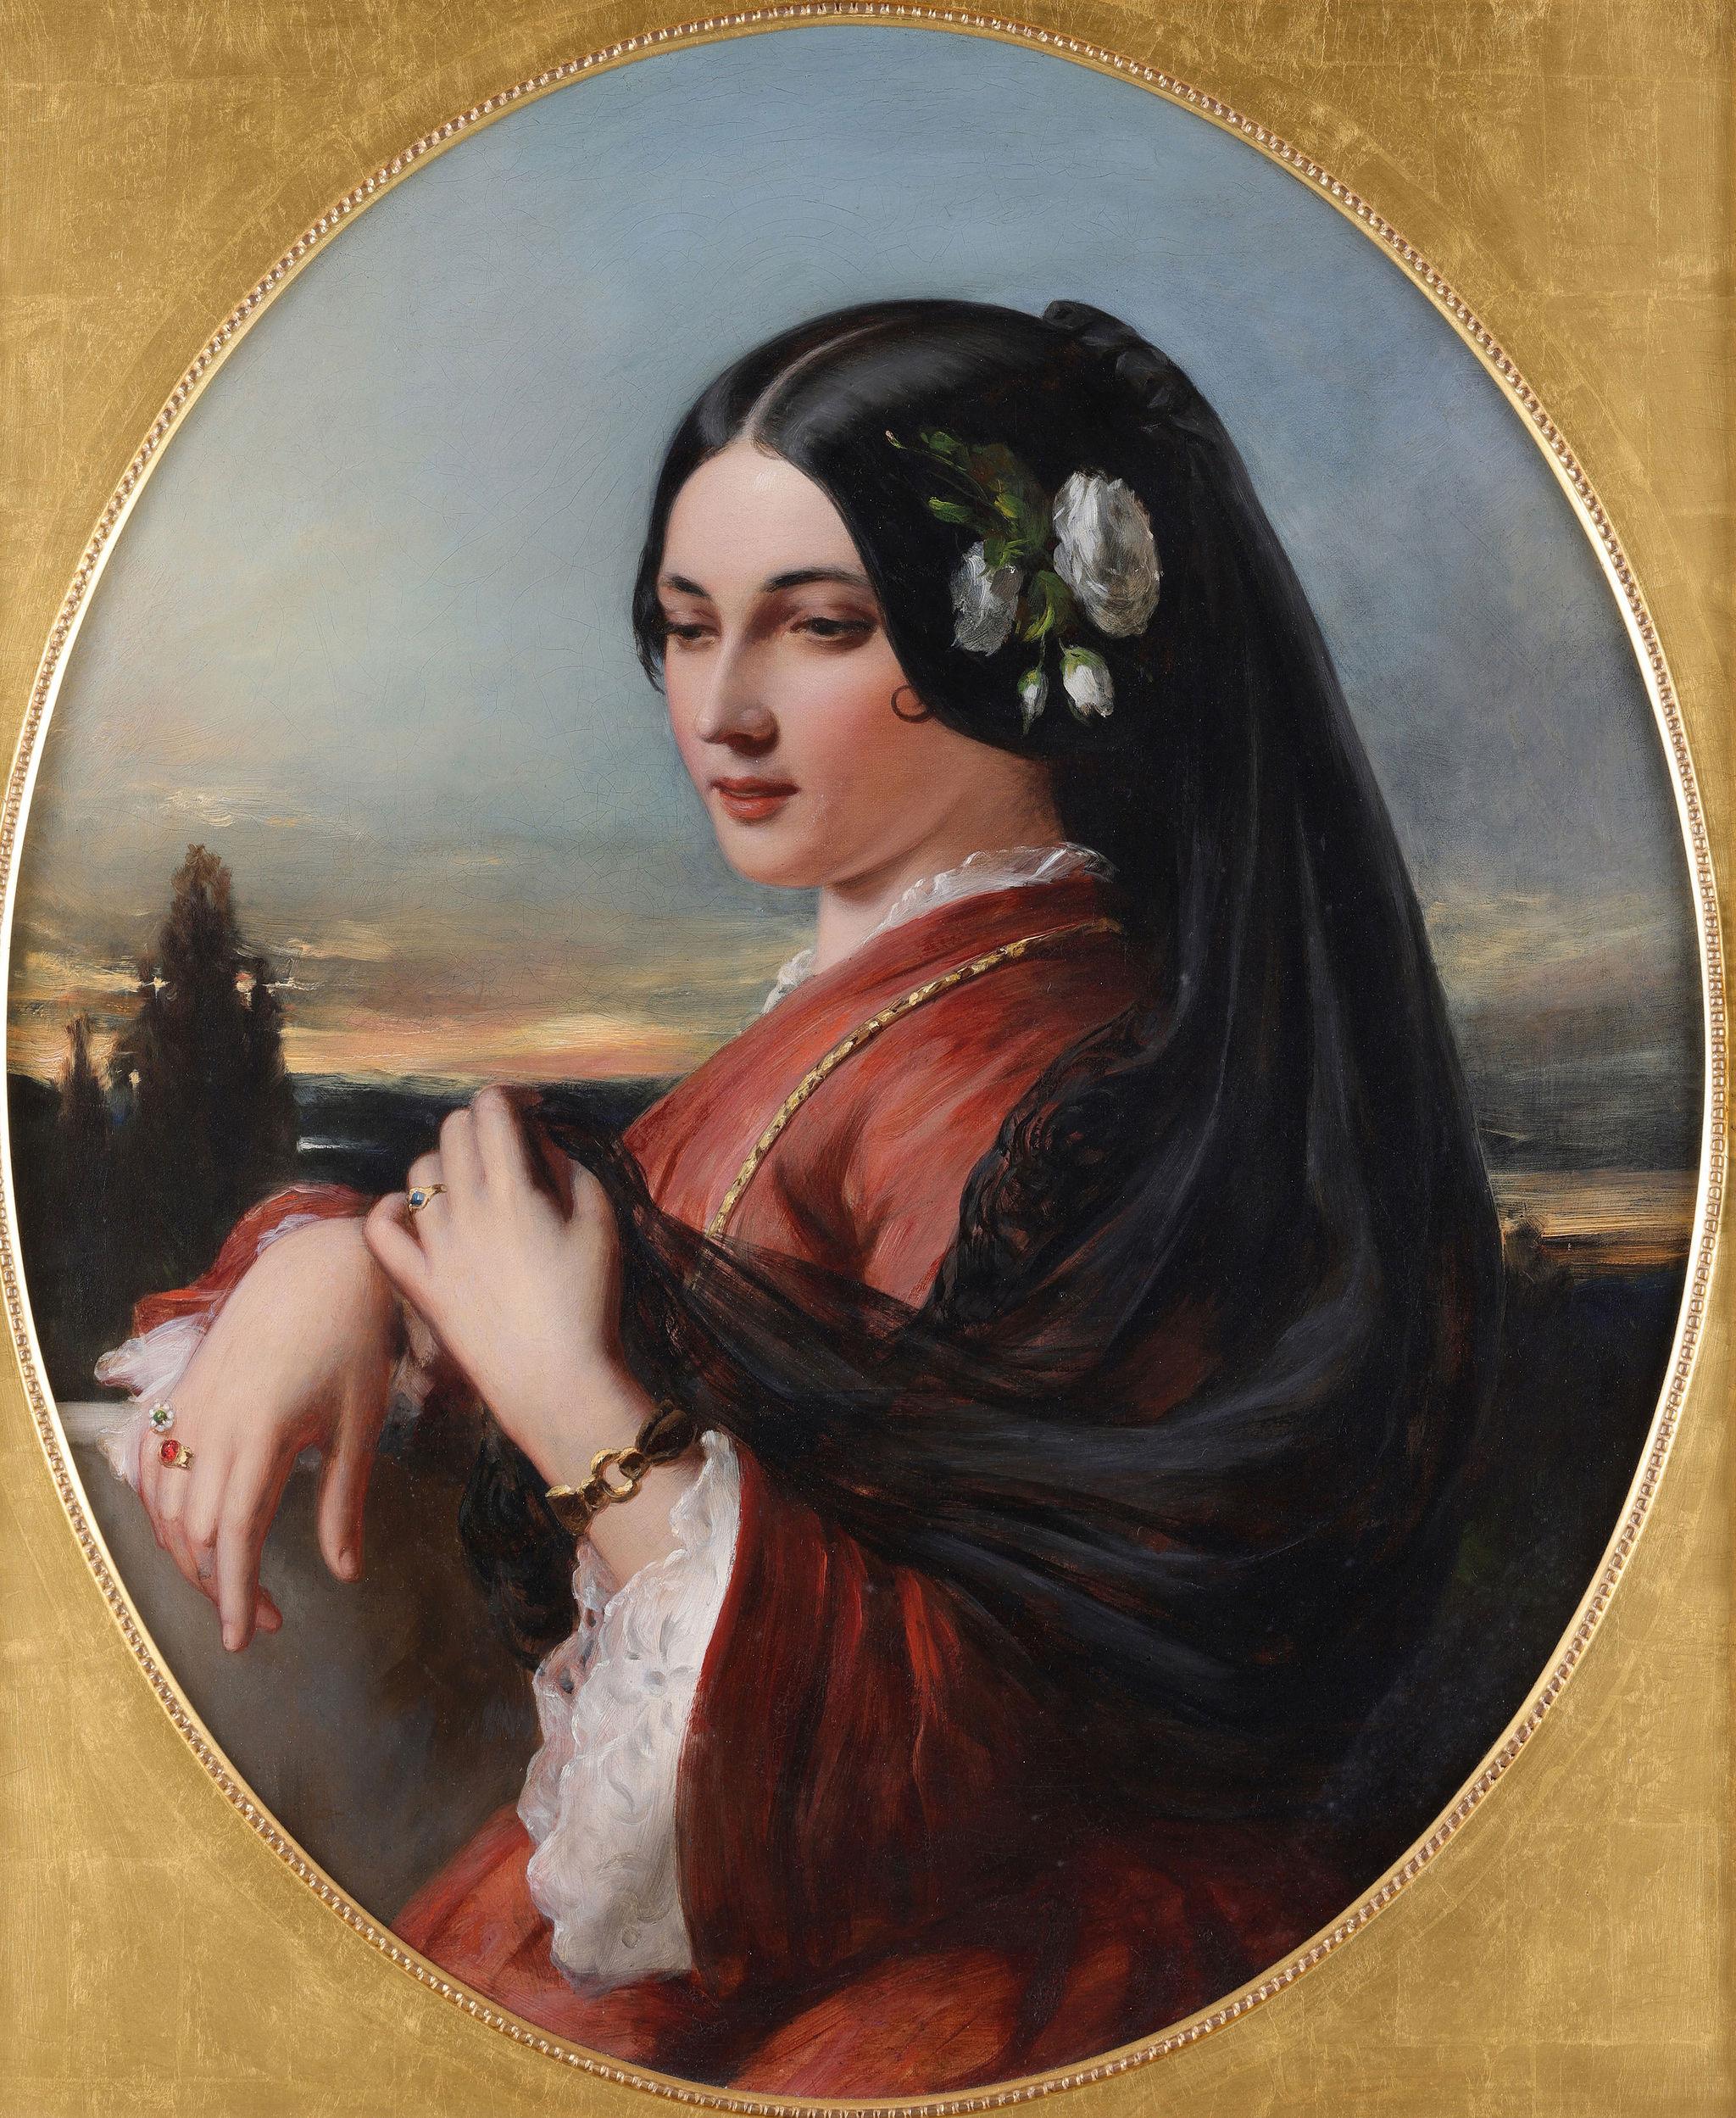 Une dame espagnole - Painting de Charles Baxter